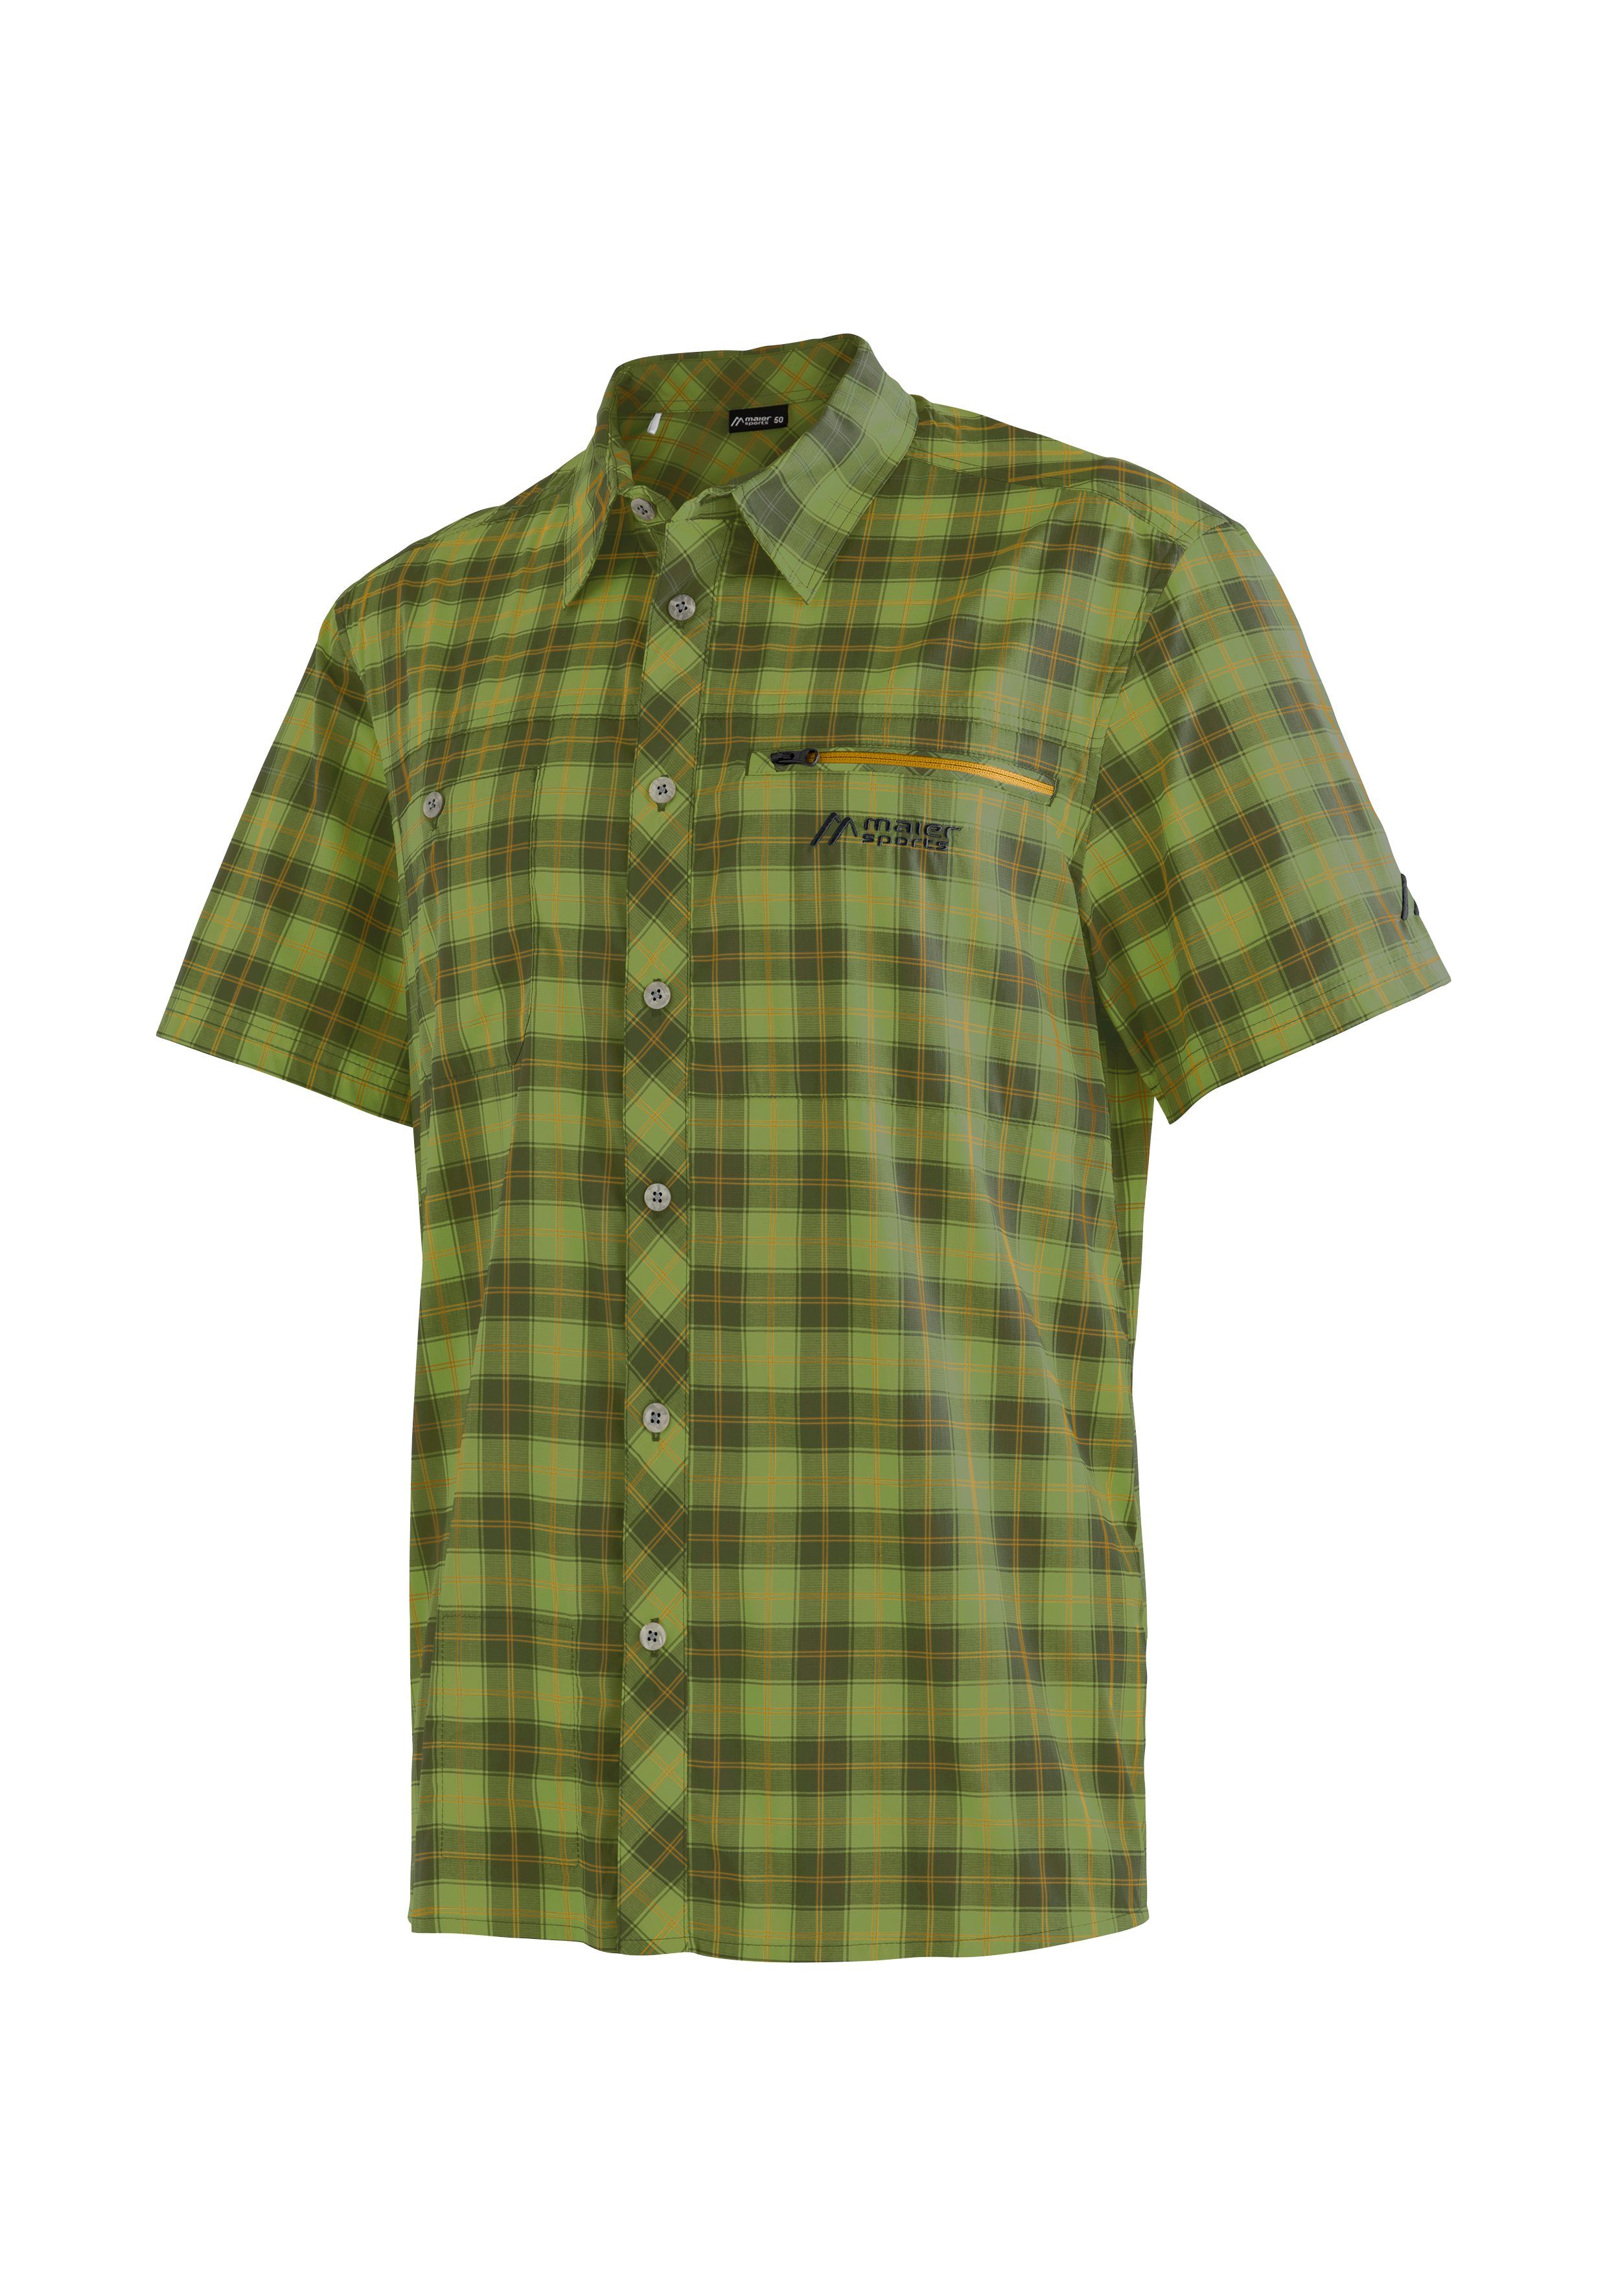 Maier Sports Outdoorhemd Kasen S/S M kurzarm Herrenhemd, atmungsaktives Wanderhemd, Karohemd grün